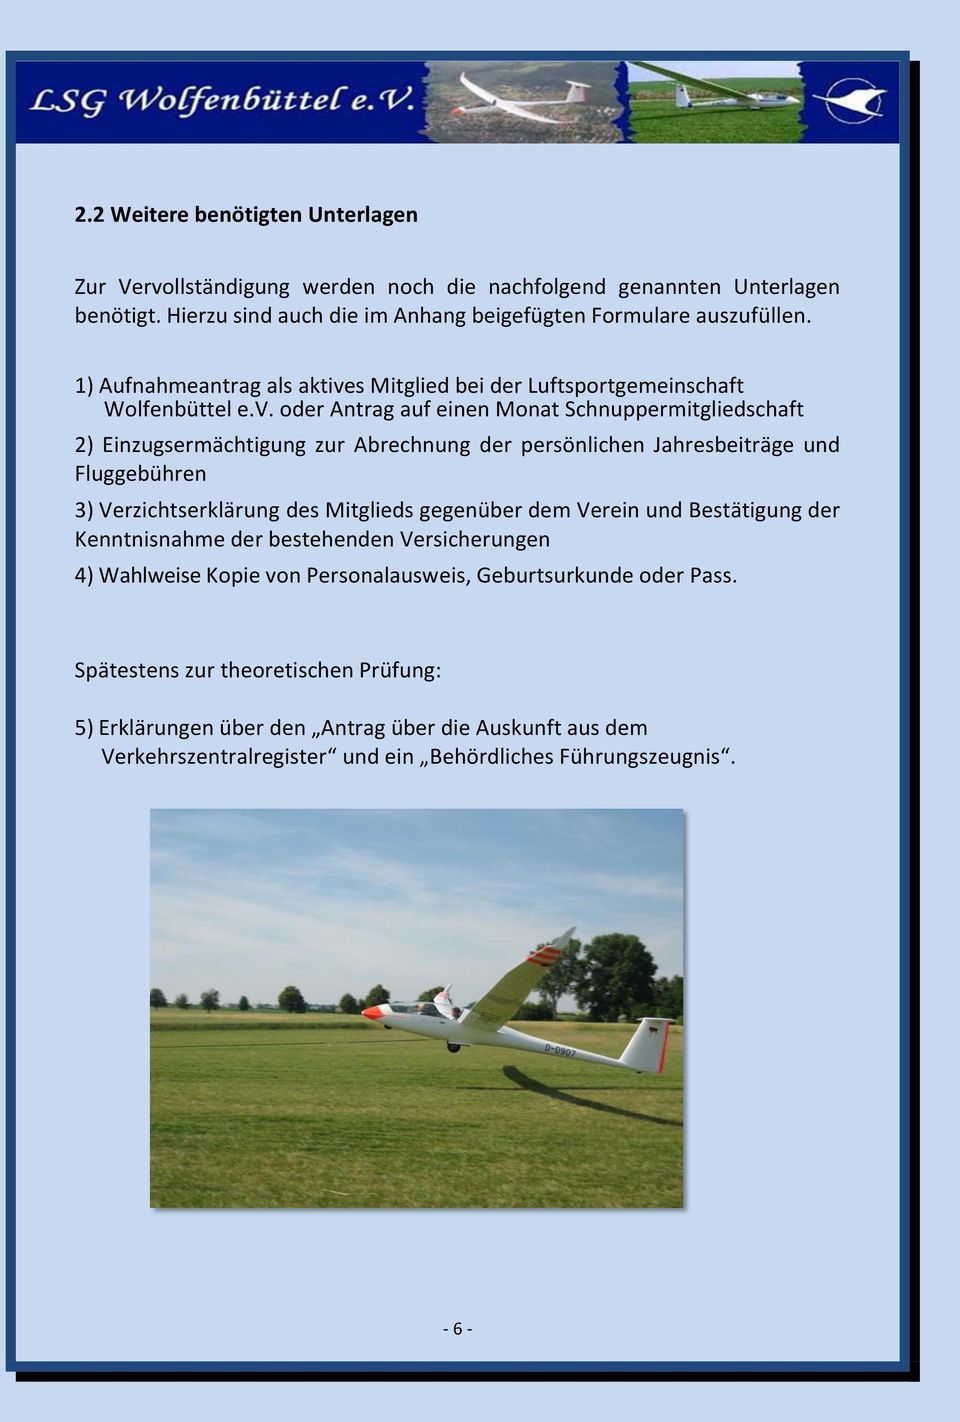 s Mitglied bei der Luftsportgemeinschaft Wolfenbüttel e.v.